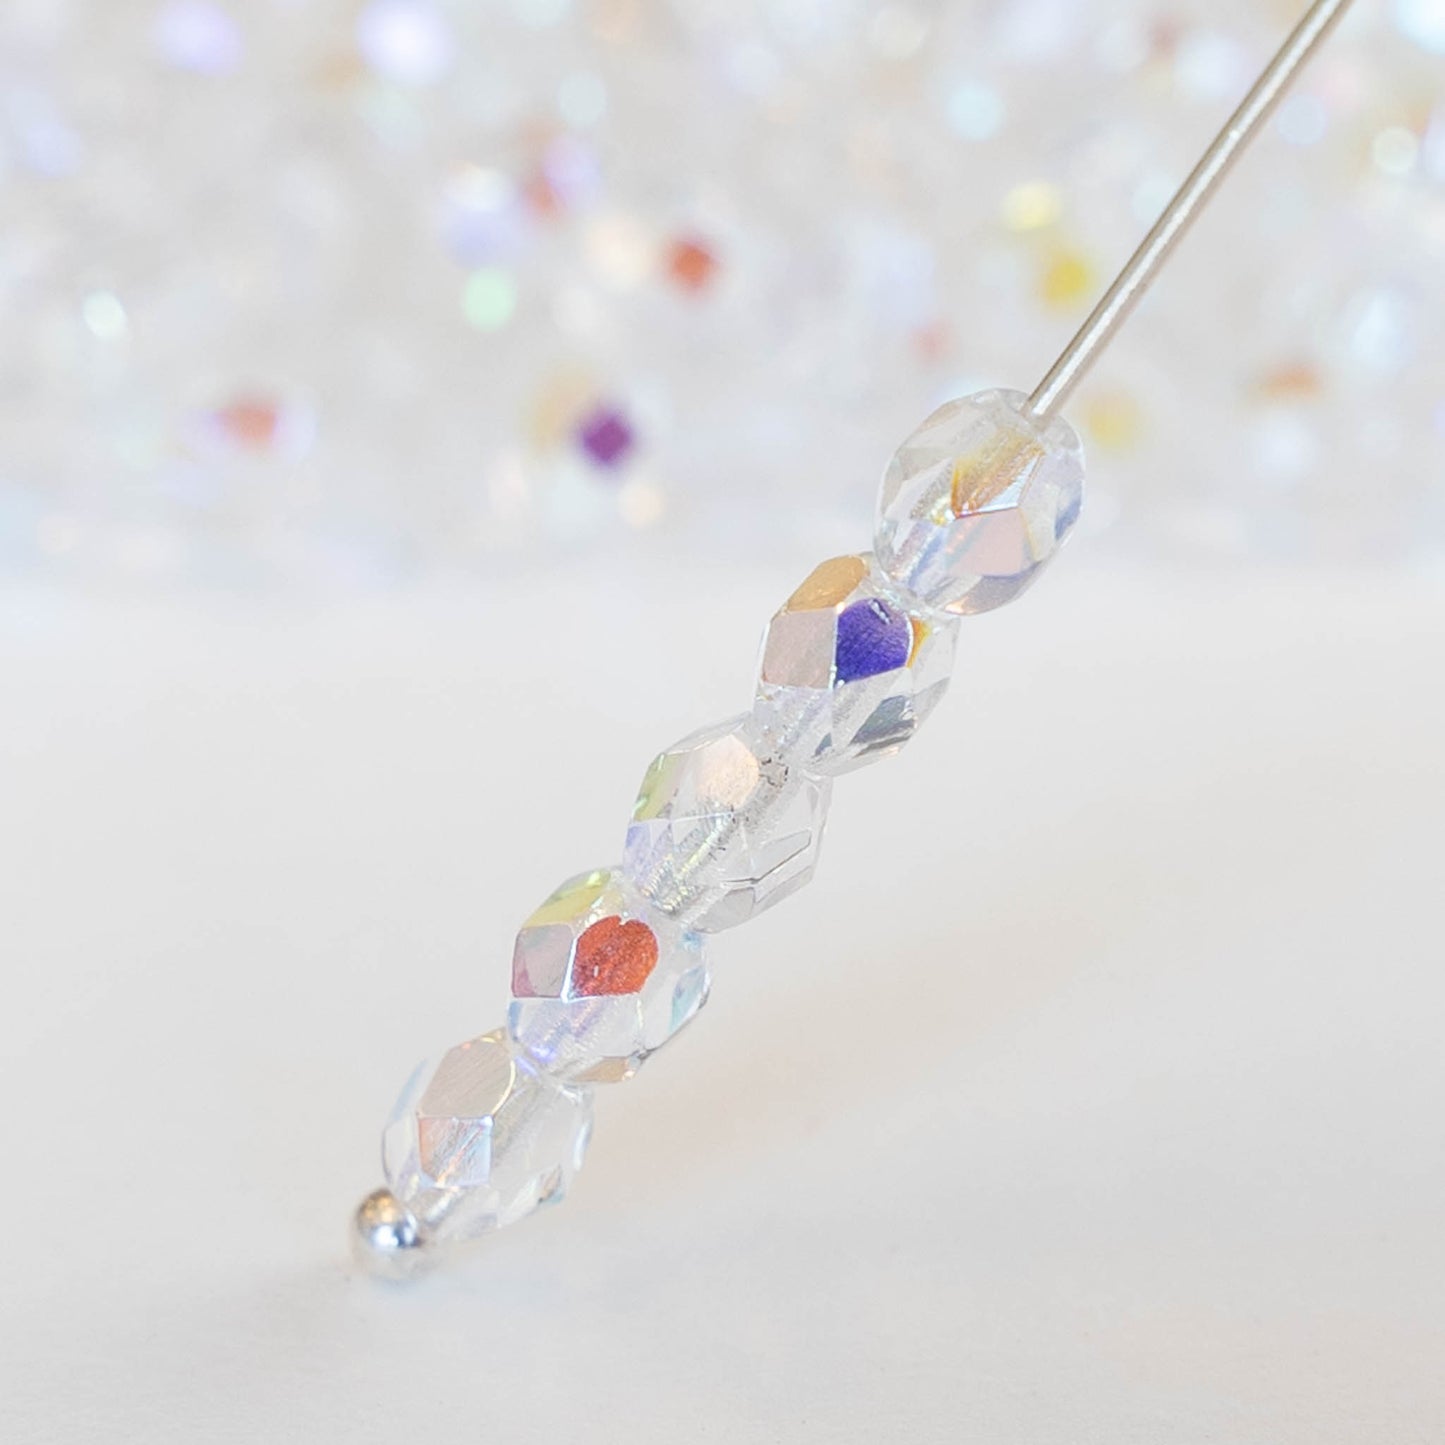 2mm Round Glass Beads - Metallic Bronze Iris - 100 Beads – funkyprettybeads